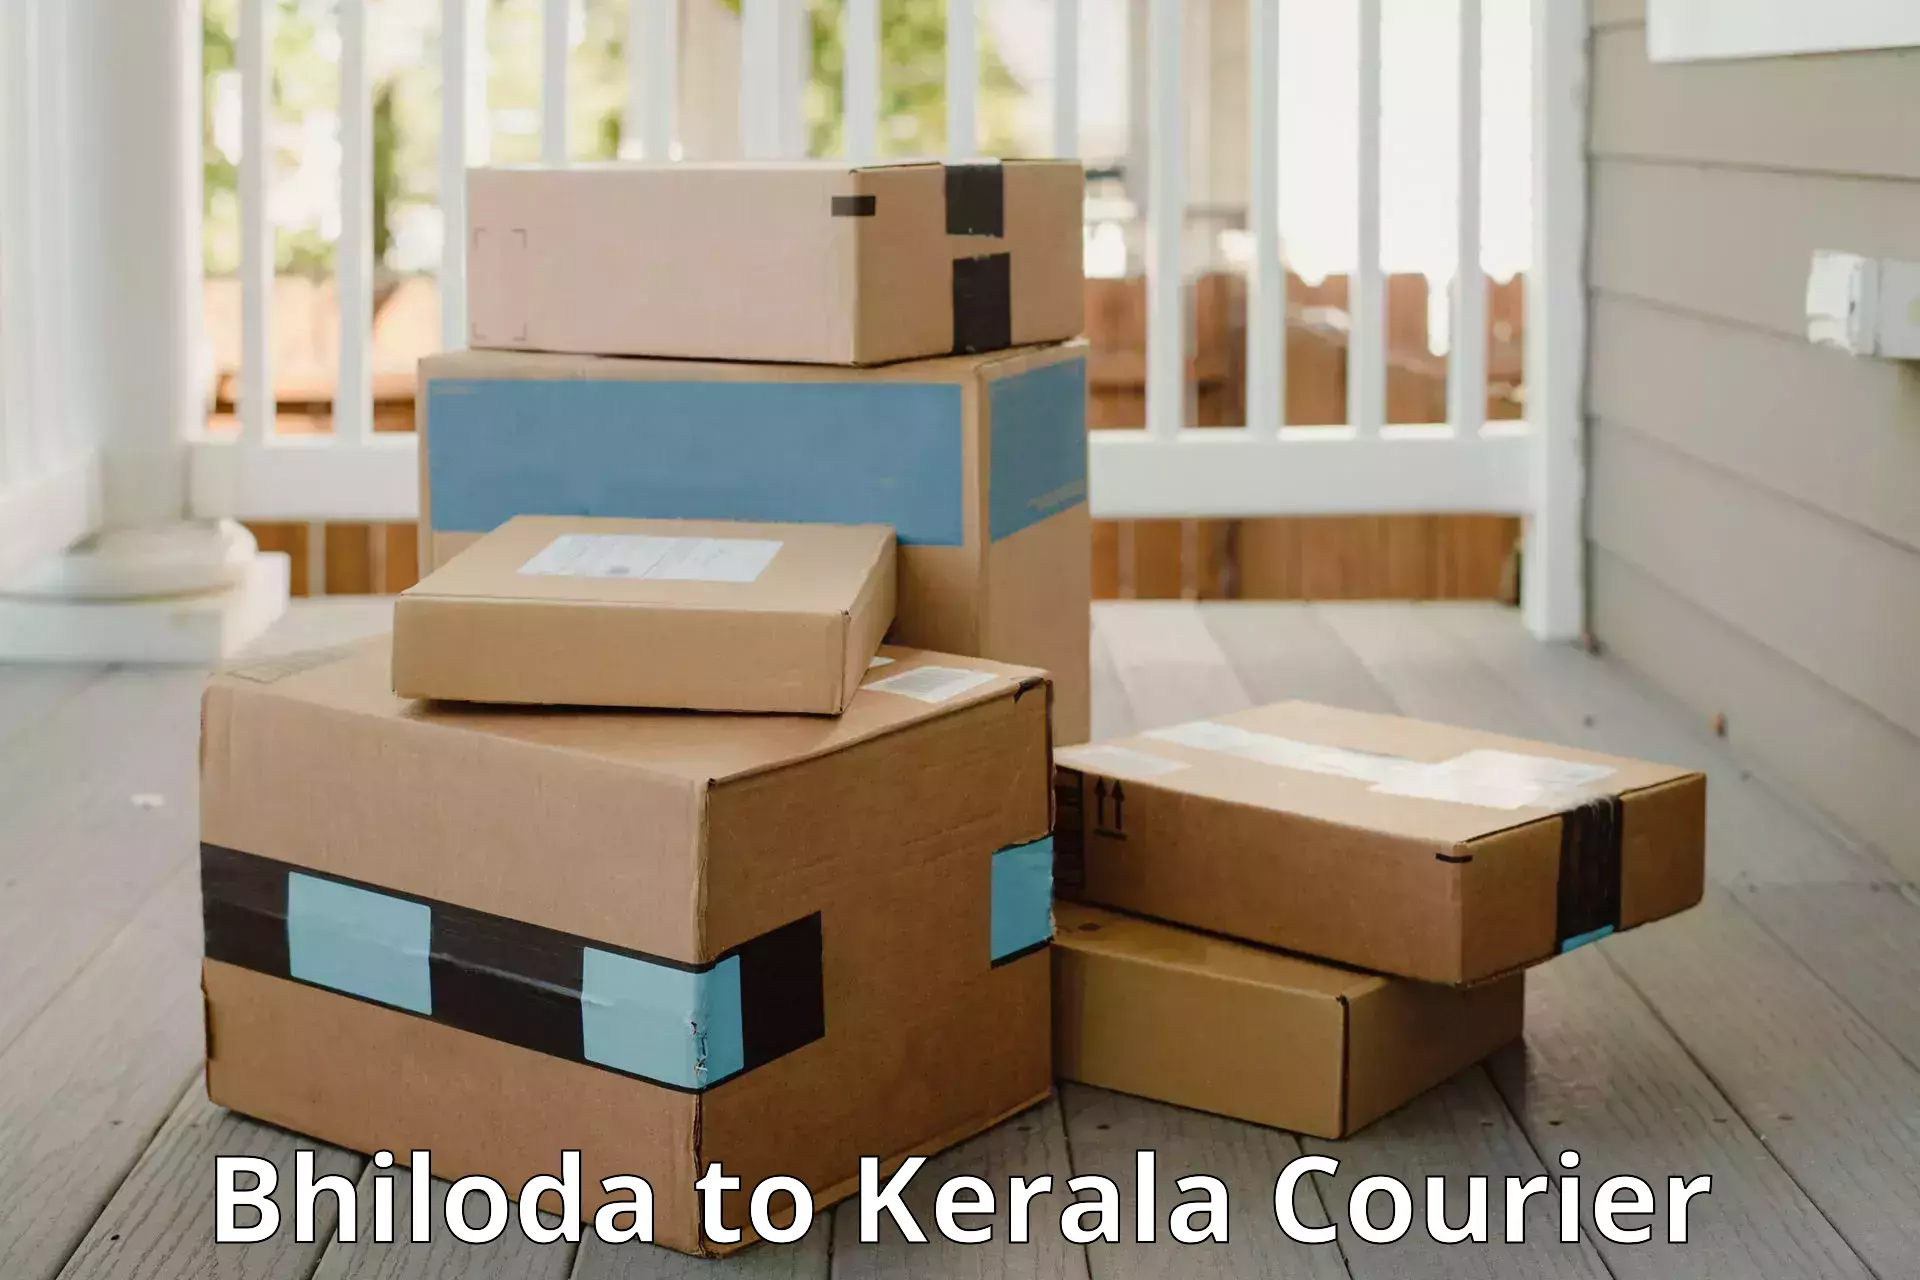 Luggage shipment specialists Bhiloda to Rajamudy